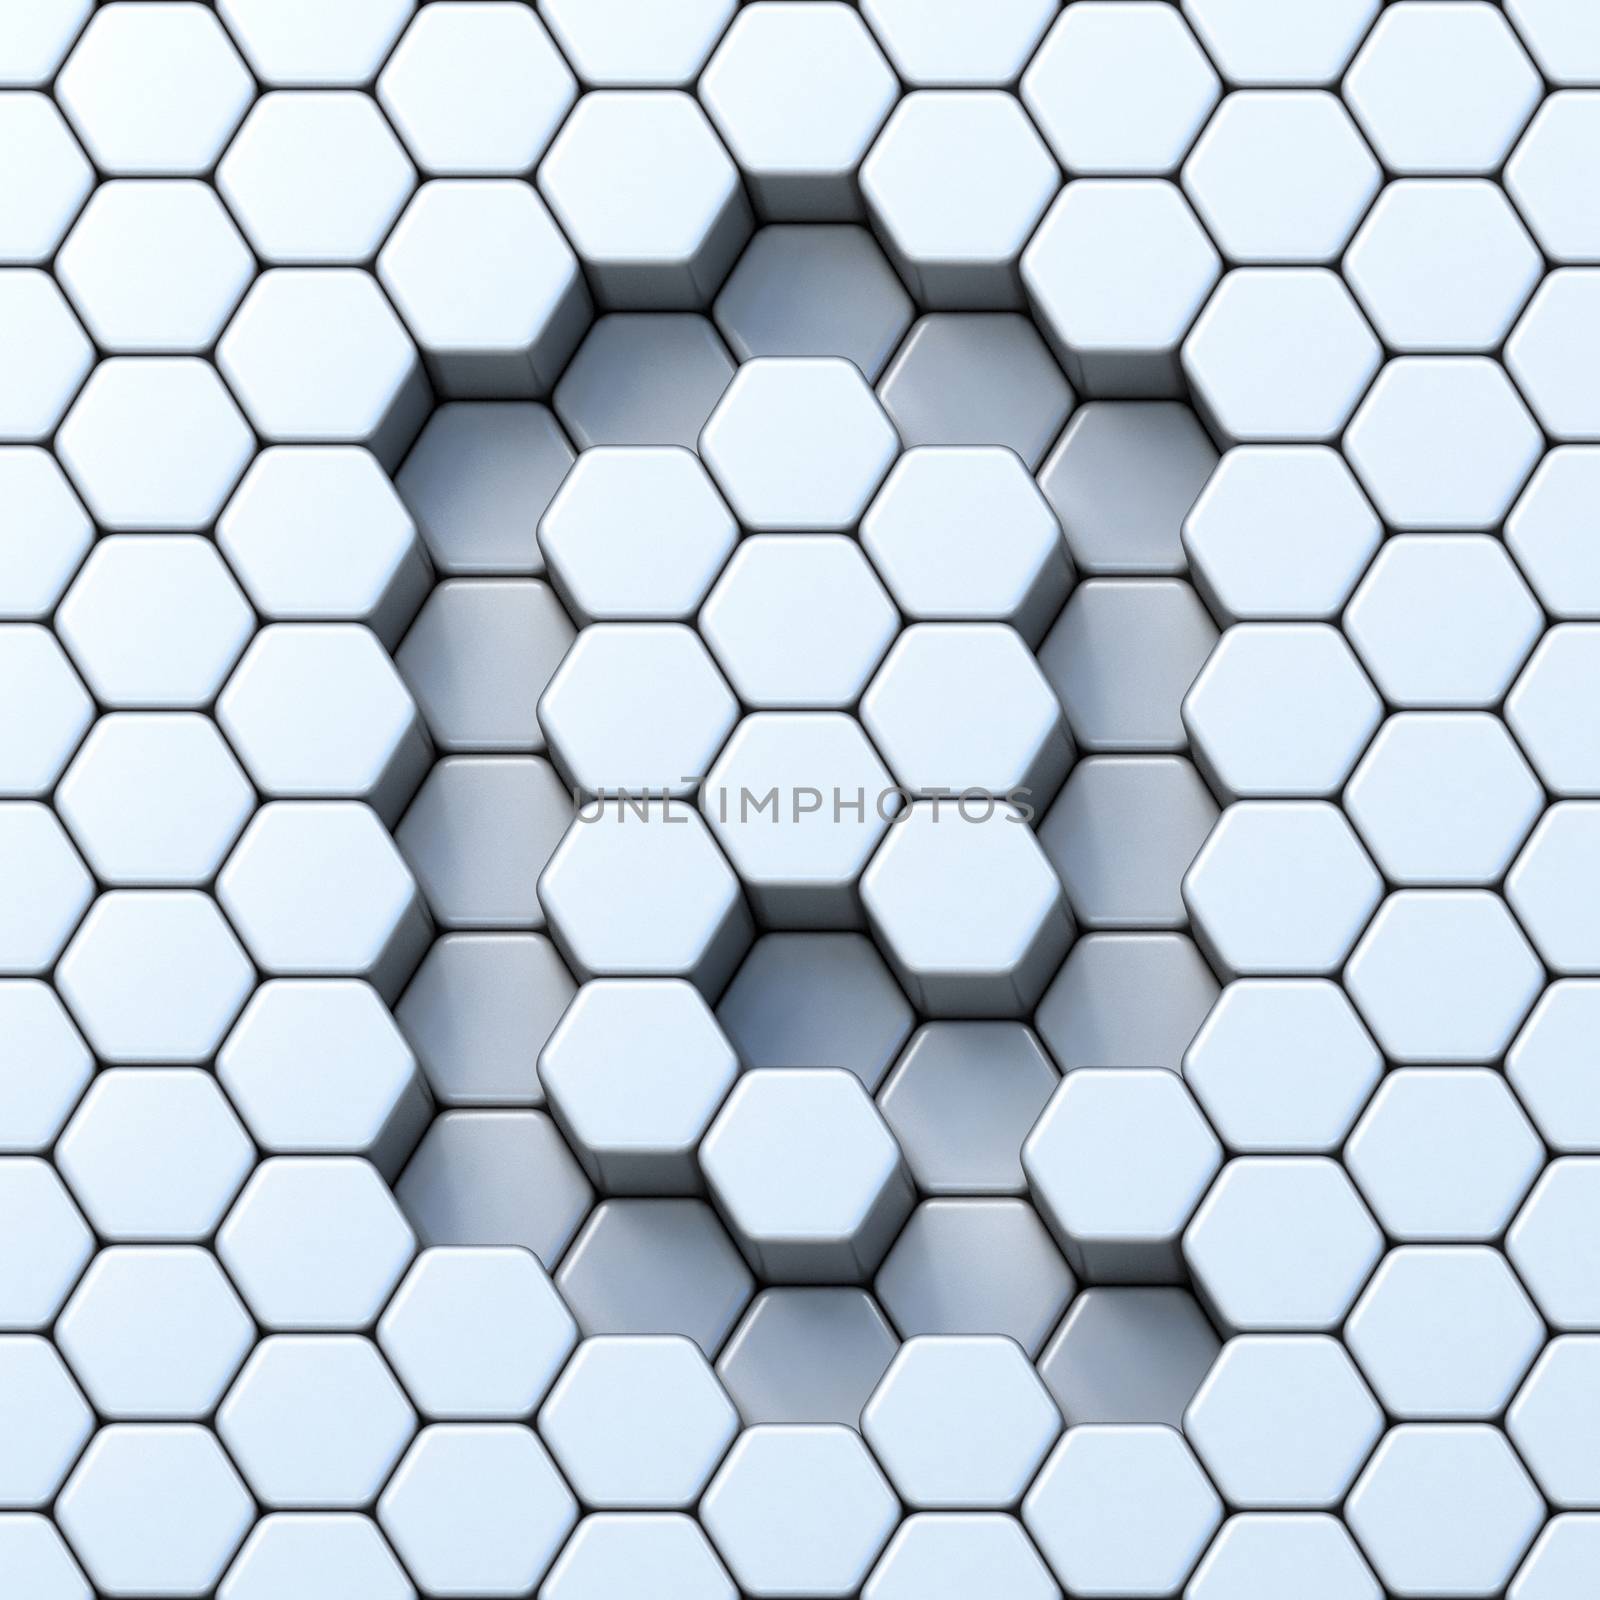 Hexagonal grid letter Q 3D render illustration